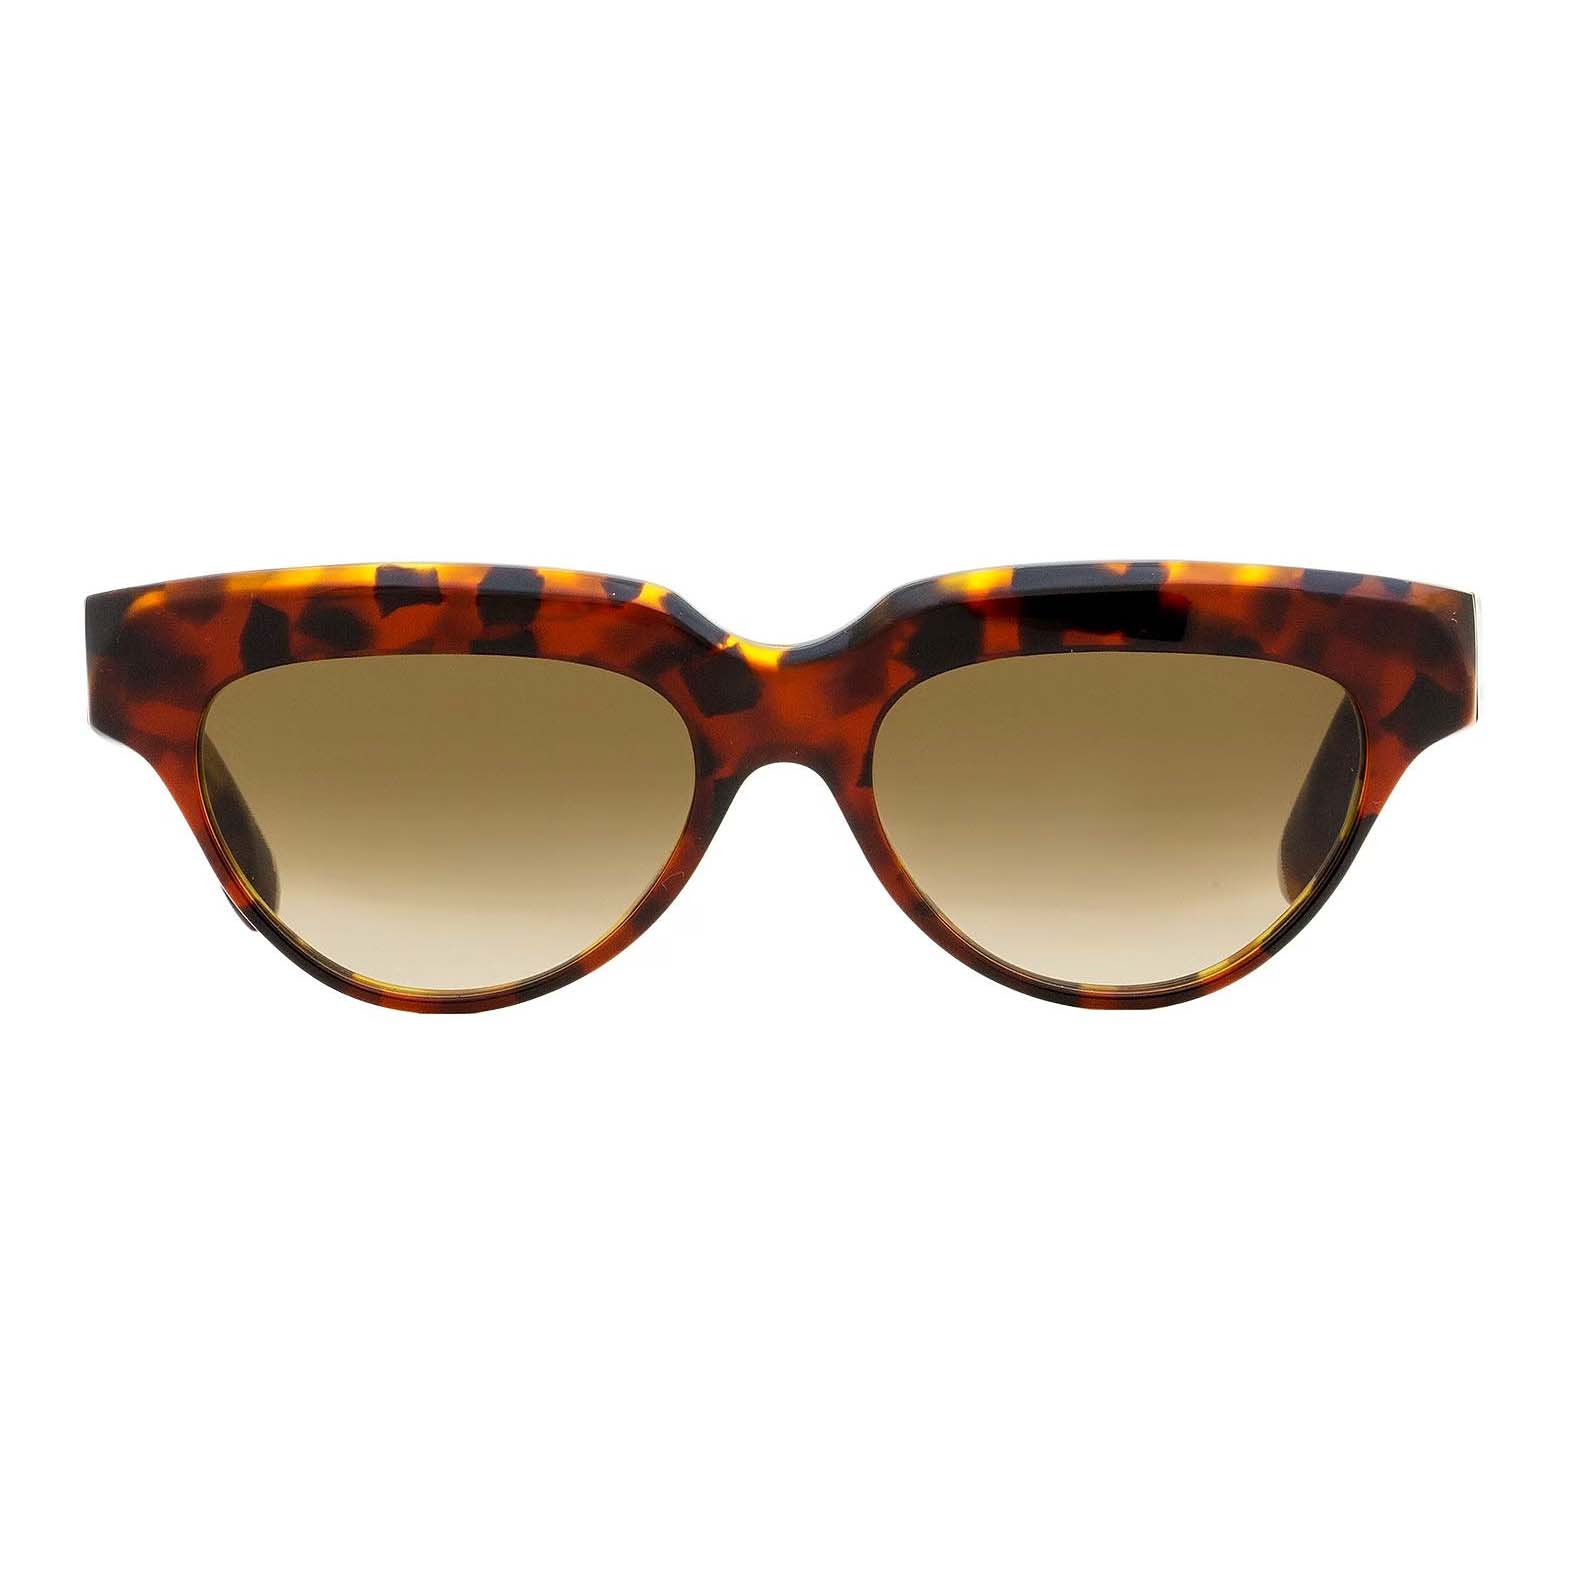 Солнцезащитные очки Victoria Beckham Cateye VB602S, красный/мультиколор солнцезащитные очки tropical кошачий глаз оправа металл градиентные для женщин золотой